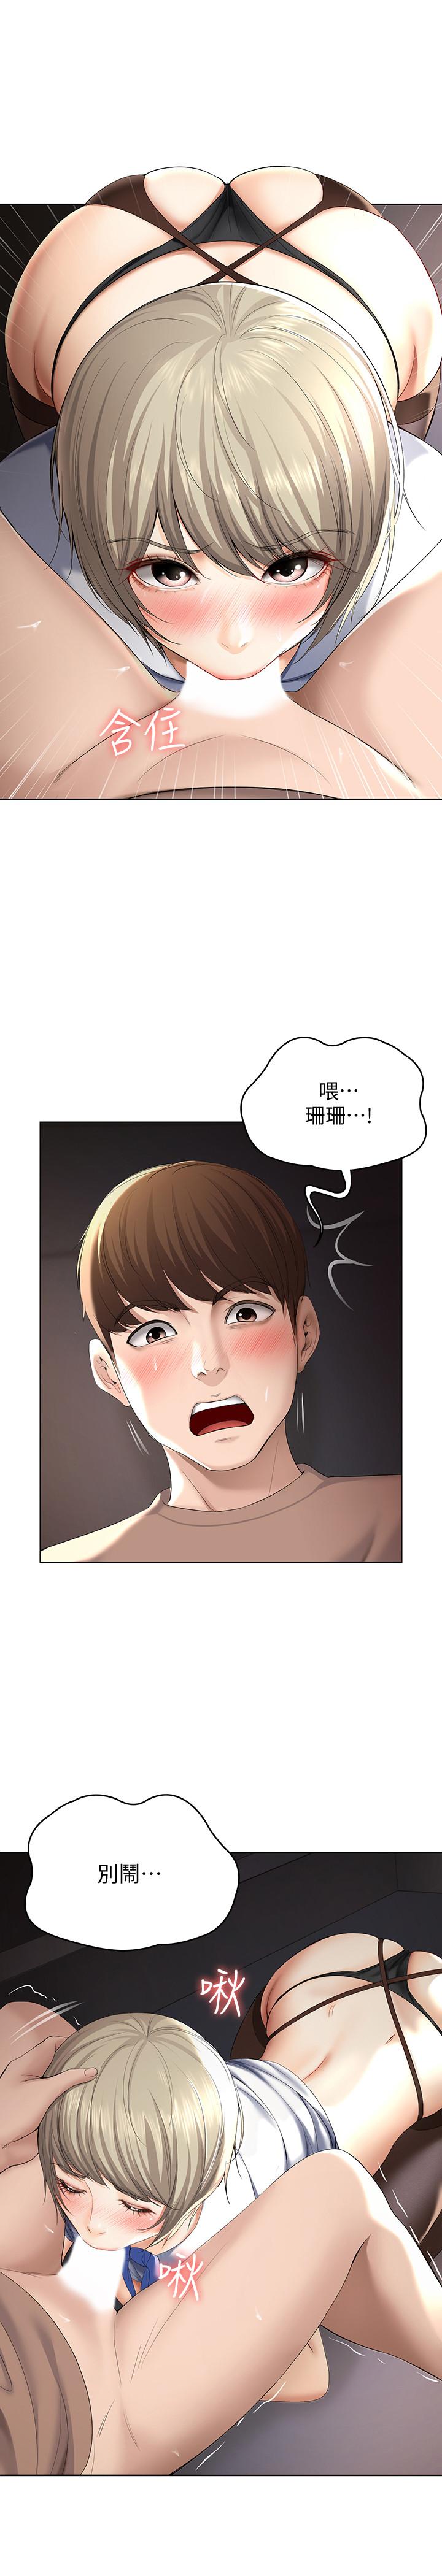 韩国污漫画 寄宿日記 第32话-在珊珊炽热的嘴里... 20